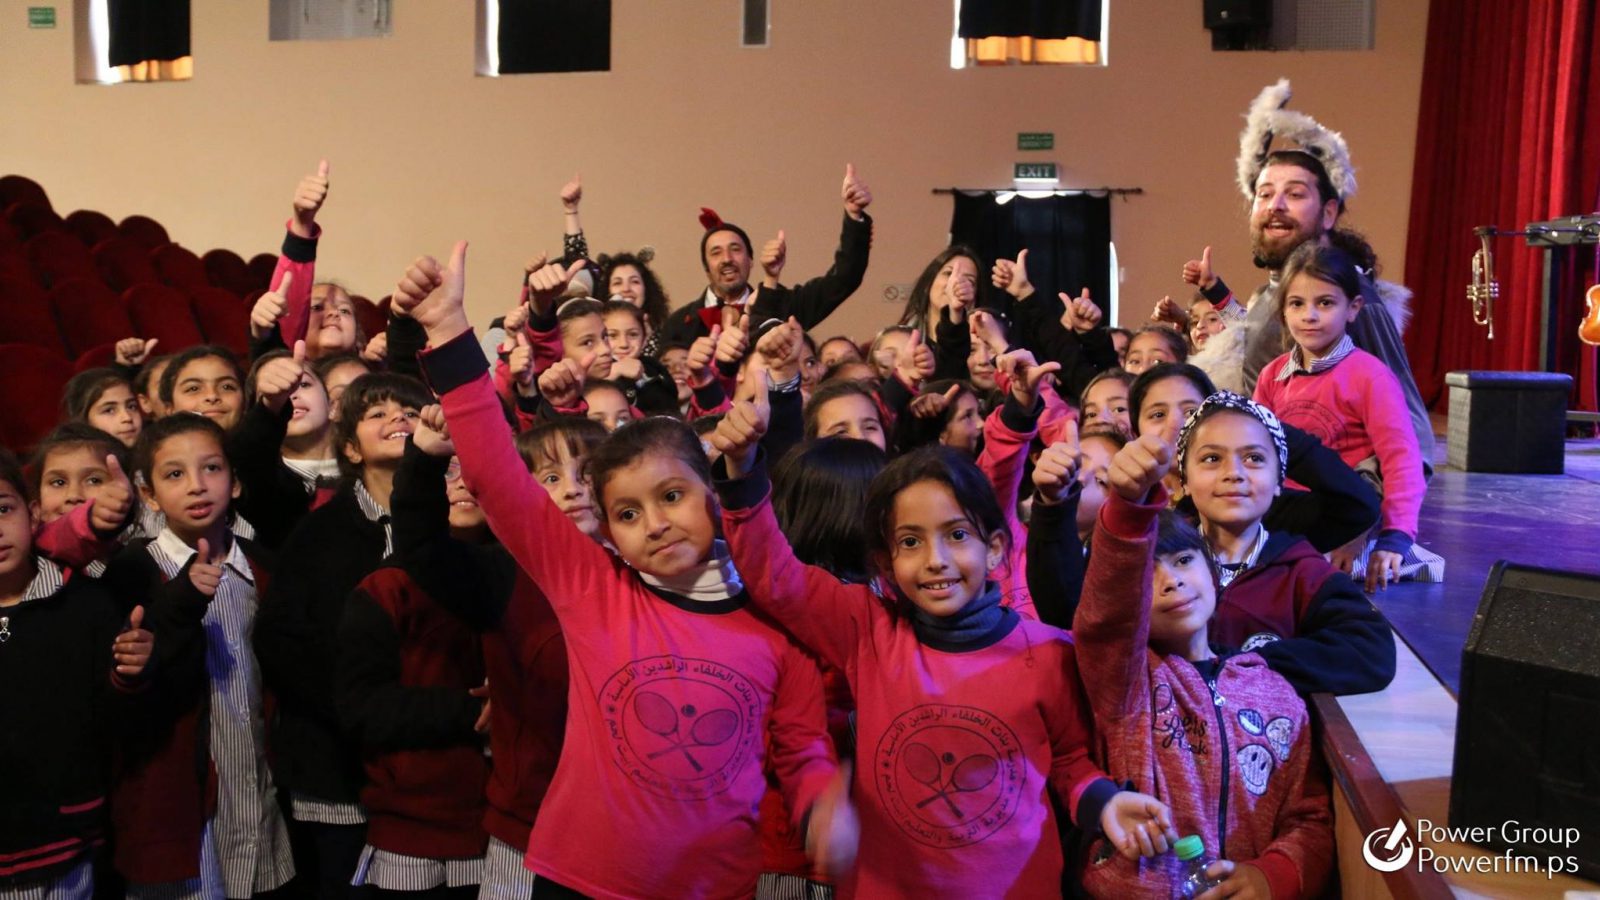 مهرجان فلسطين الدولي لمسرح الطفل والشباب نظم بالشراكة مع الاتحاد الأوروبي